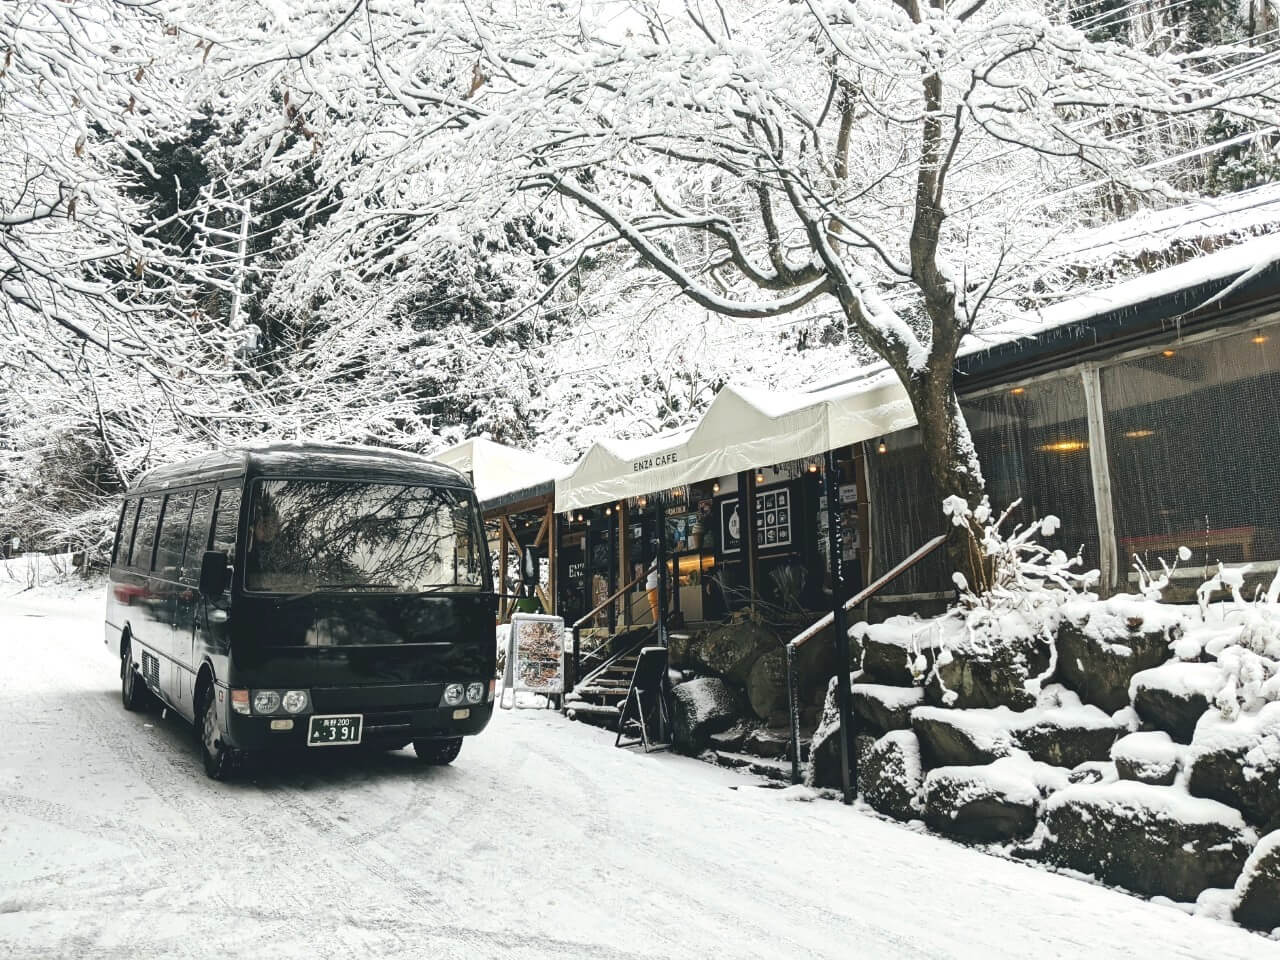 kanbayashi-enza-winter